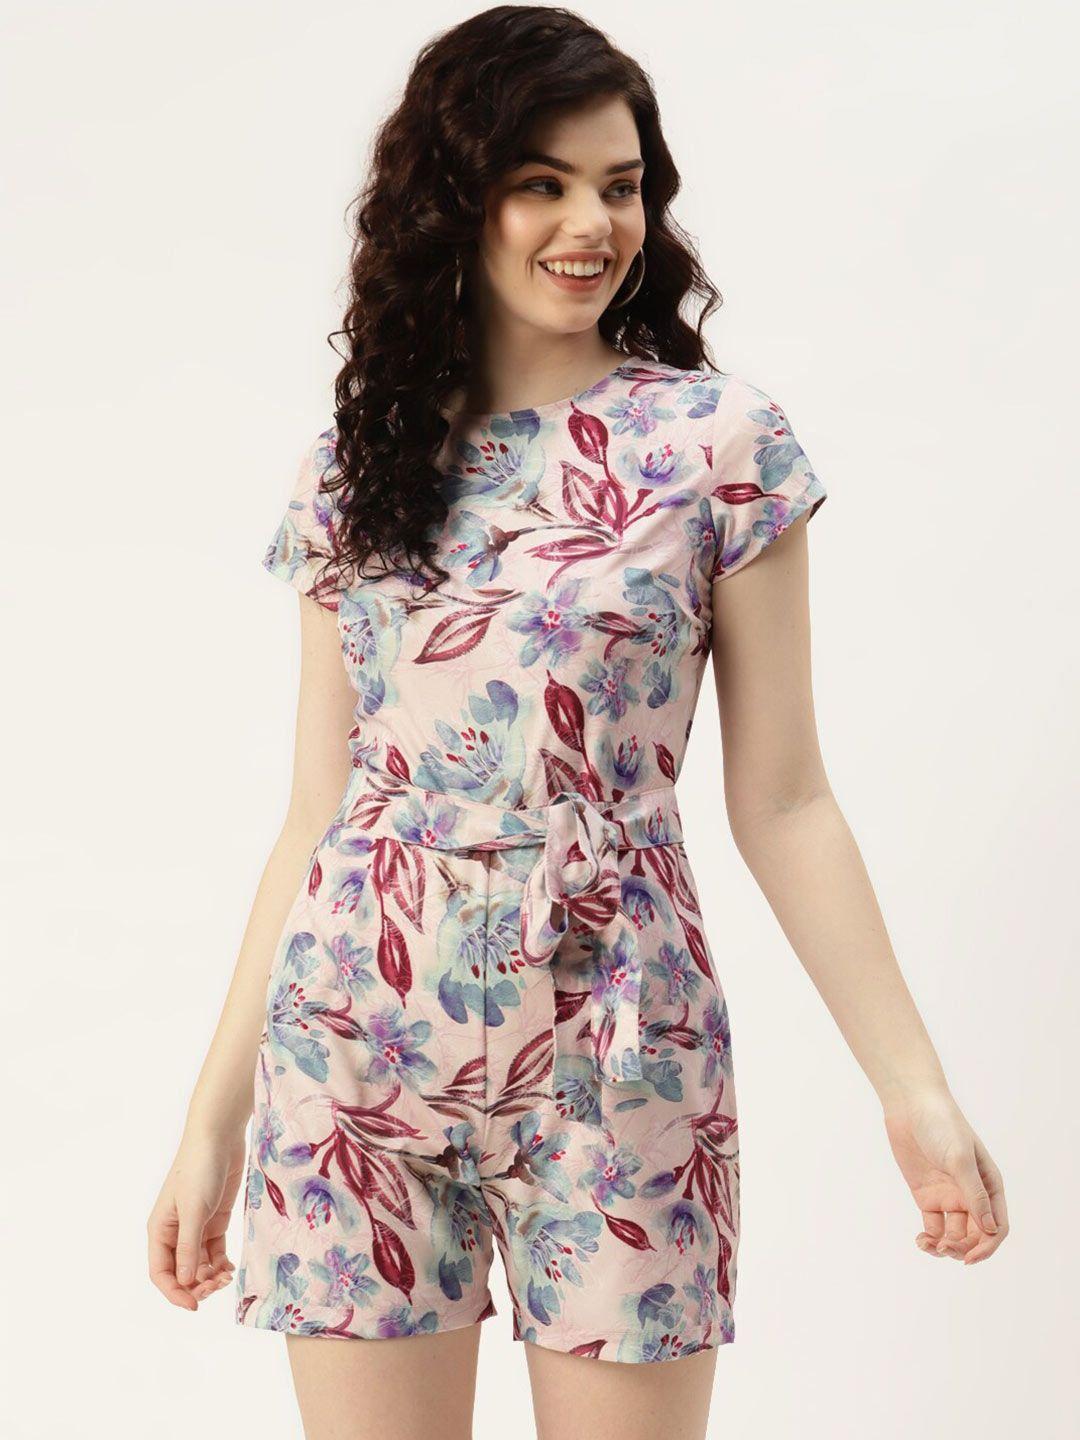 sleek-italia-round-neck-floral-printed-waist-tie-ups-playsuit-jumpsuit